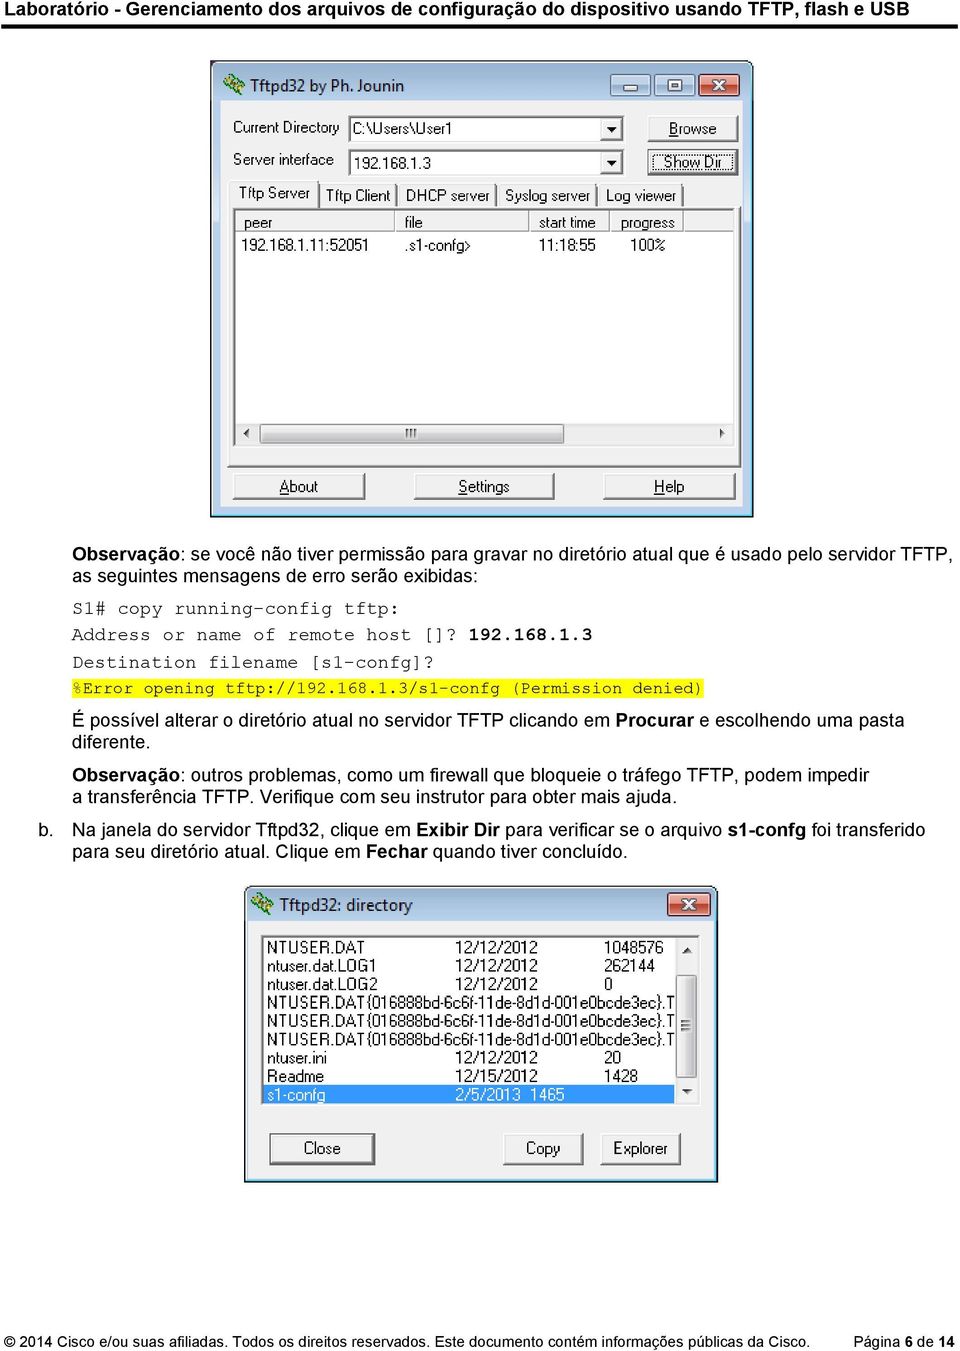 Observação: outros problemas, como um firewall que bloqueie o tráfego TFTP, podem impedir a transferência TFTP. Verifique com seu instrutor para obter mais ajuda. b. Na janela do servidor Tftpd32, clique em Exibir Dir para verificar se o arquivo s1-confg foi transferido para seu diretório atual.